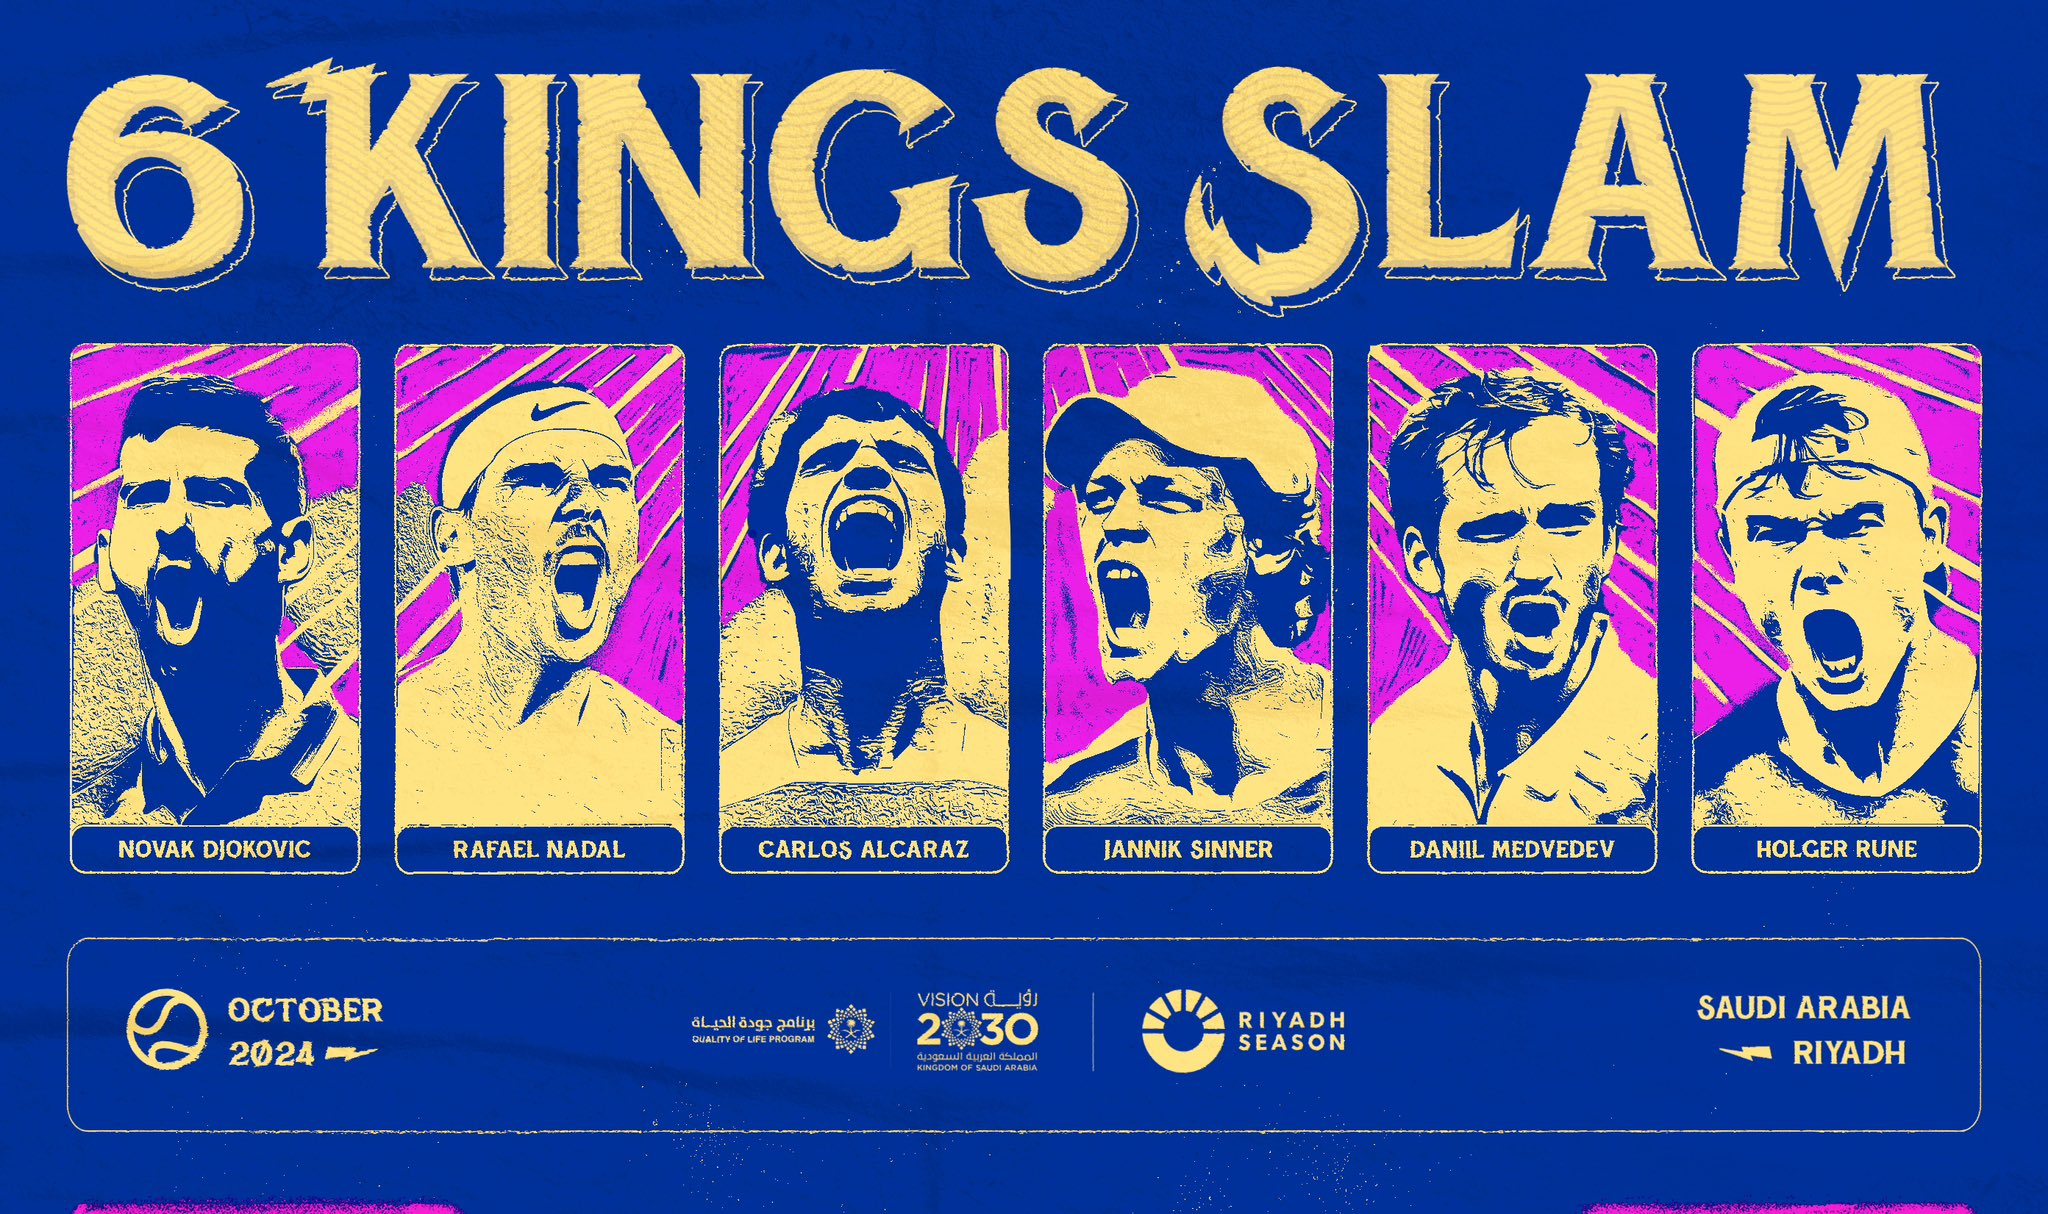 6-kings-slam-1707231646.png